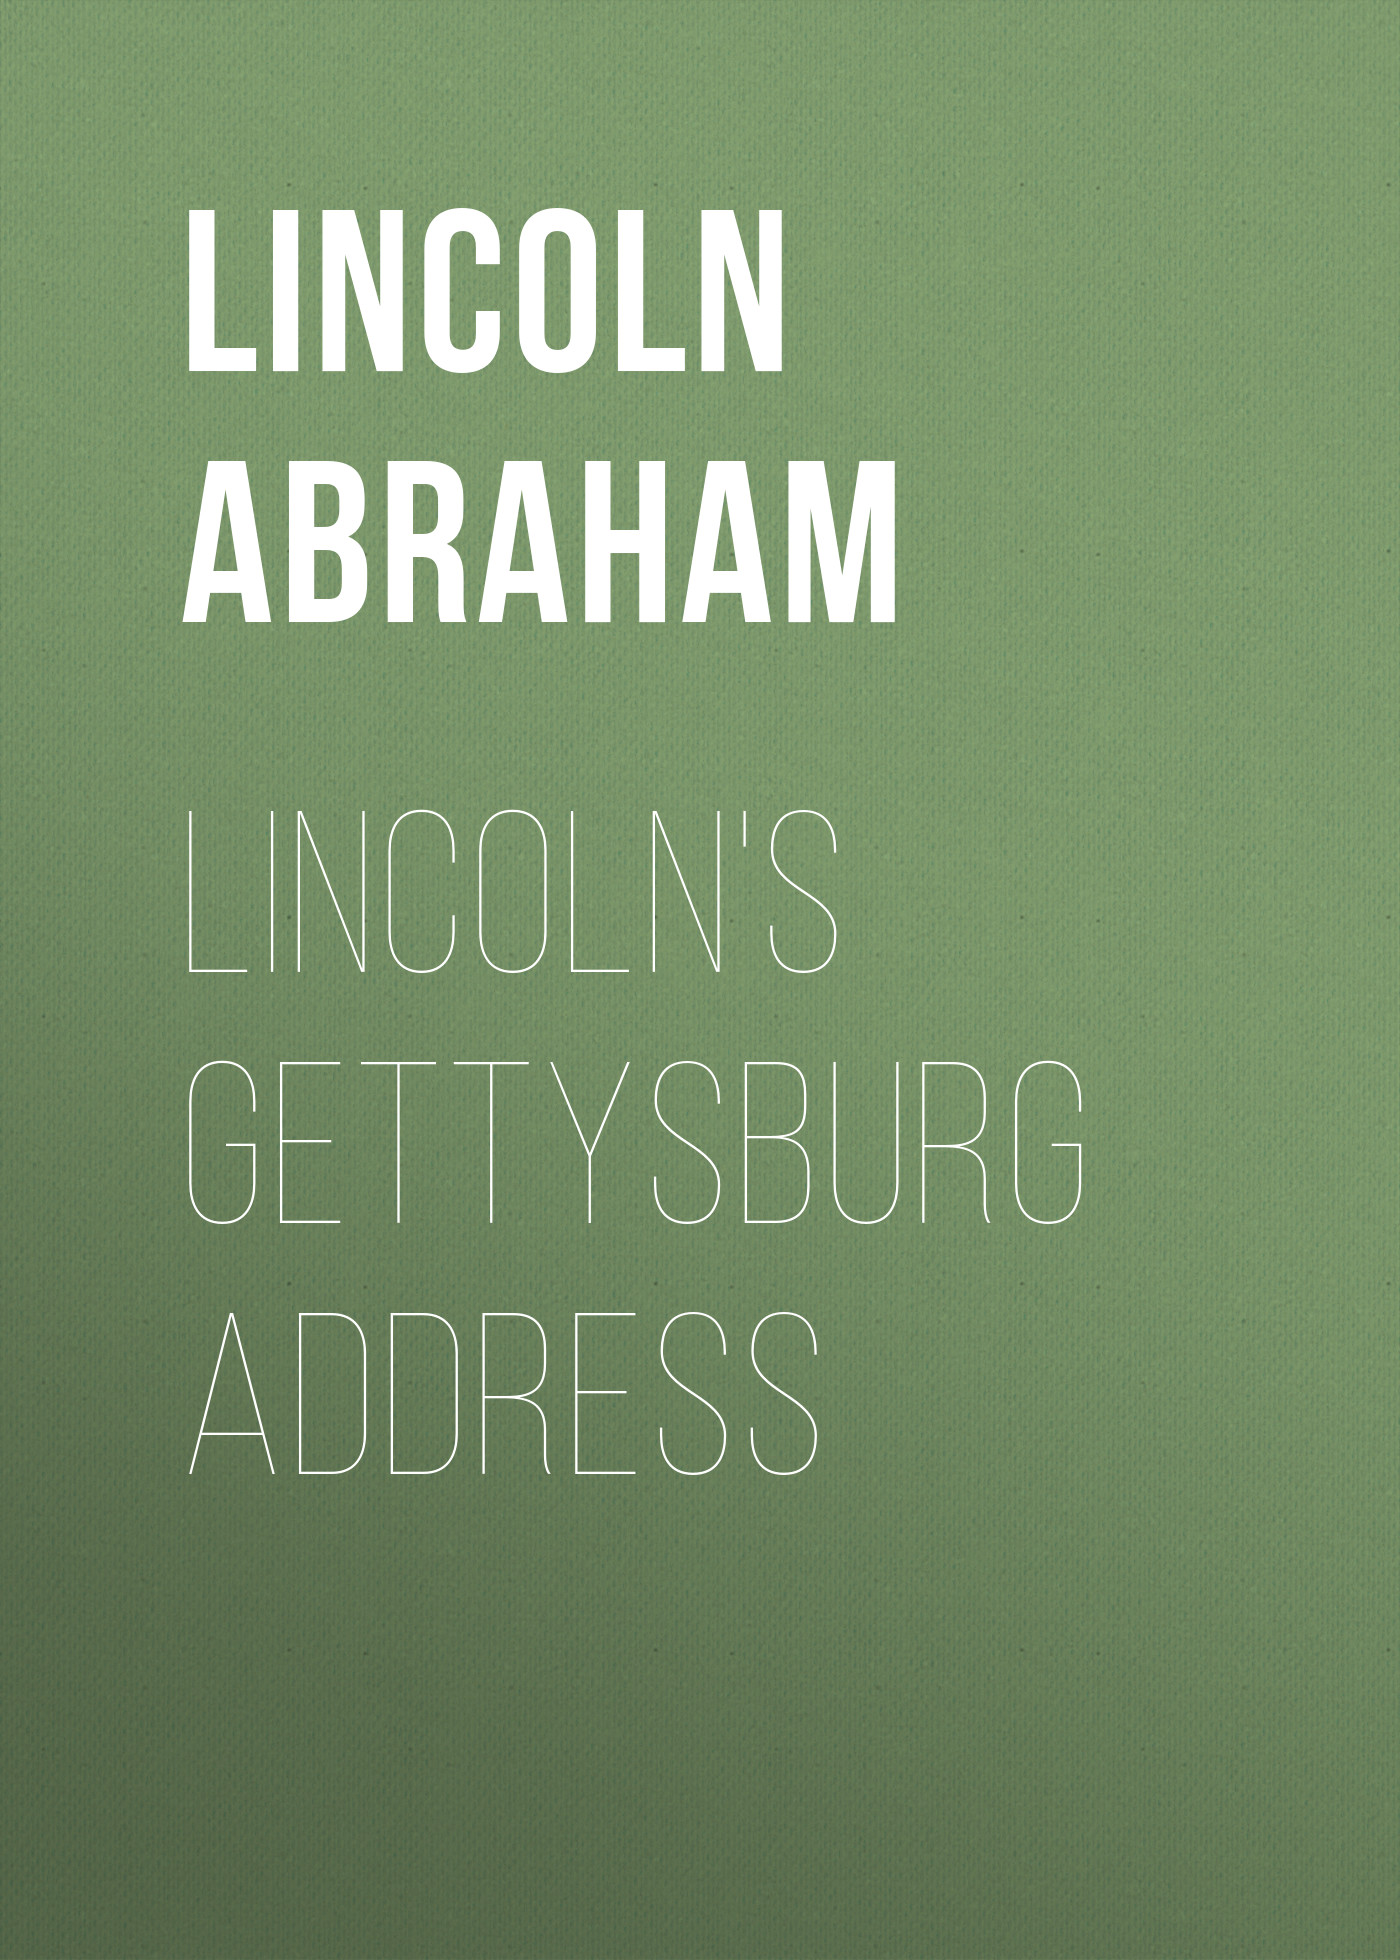 Книга Lincoln's Gettysburg Address из серии , созданная Abraham Lincoln, может относится к жанру Зарубежная старинная литература, Зарубежная классика. Стоимость электронной книги Lincoln's Gettysburg Address с идентификатором 25292491 составляет 0 руб.